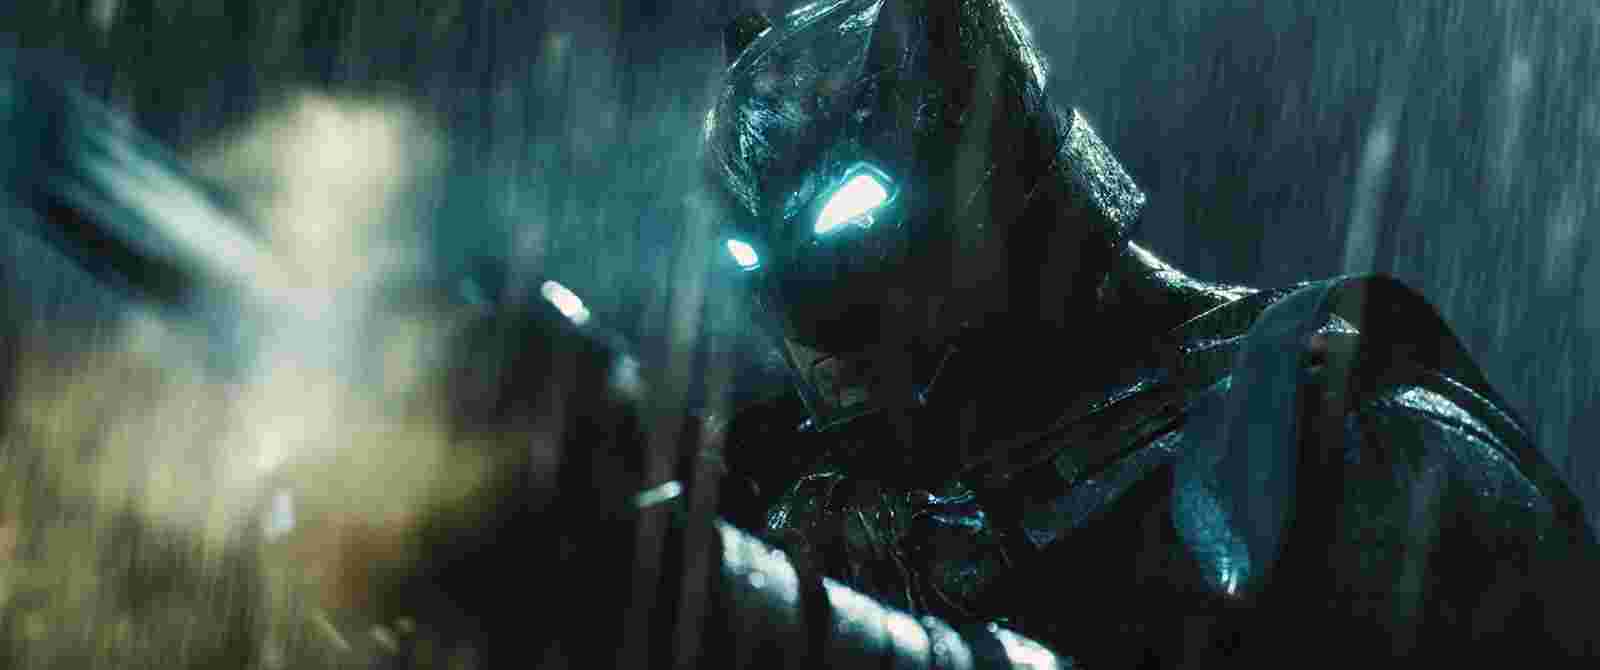 Огляд фільму Бетмен проти Супермена: Світанок справедливості | Batman v Superman: Dawn of Justice